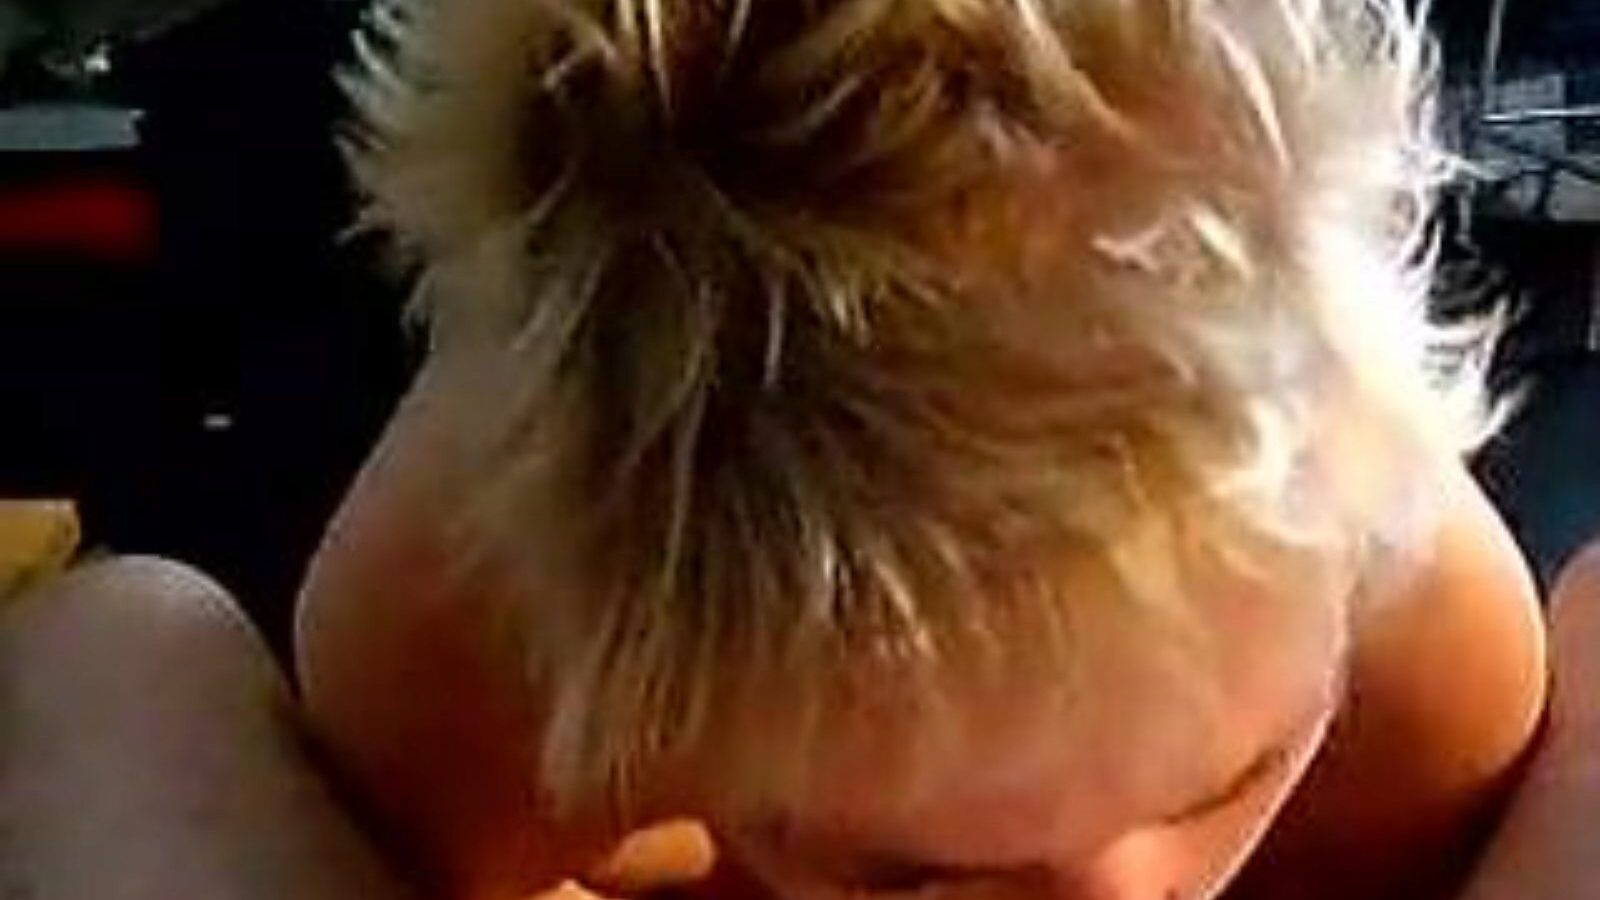 leuke dame: hjemmelaget og gammel jente porno video a6 - xhamster se leuke dame tube fuckfest film gratis på xhamster, med den hotteste samlingen av nederlandsk hjemmelaget, gammel jente og sugende pornografiske klipp